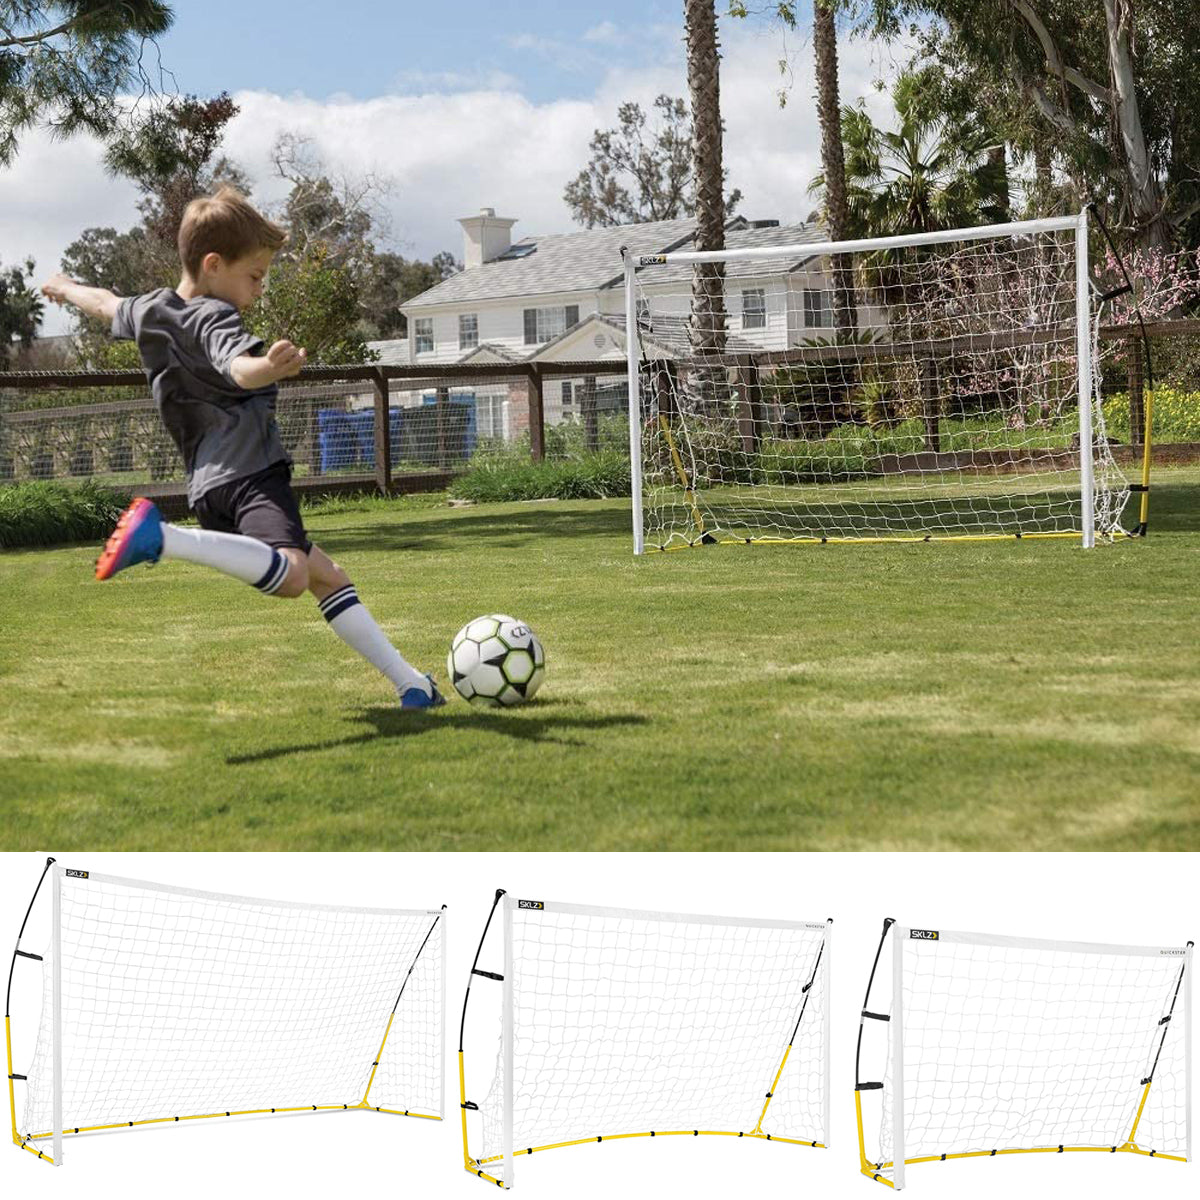 SKLZ Quickster Soccer Goal - White/Yellow SKLZ